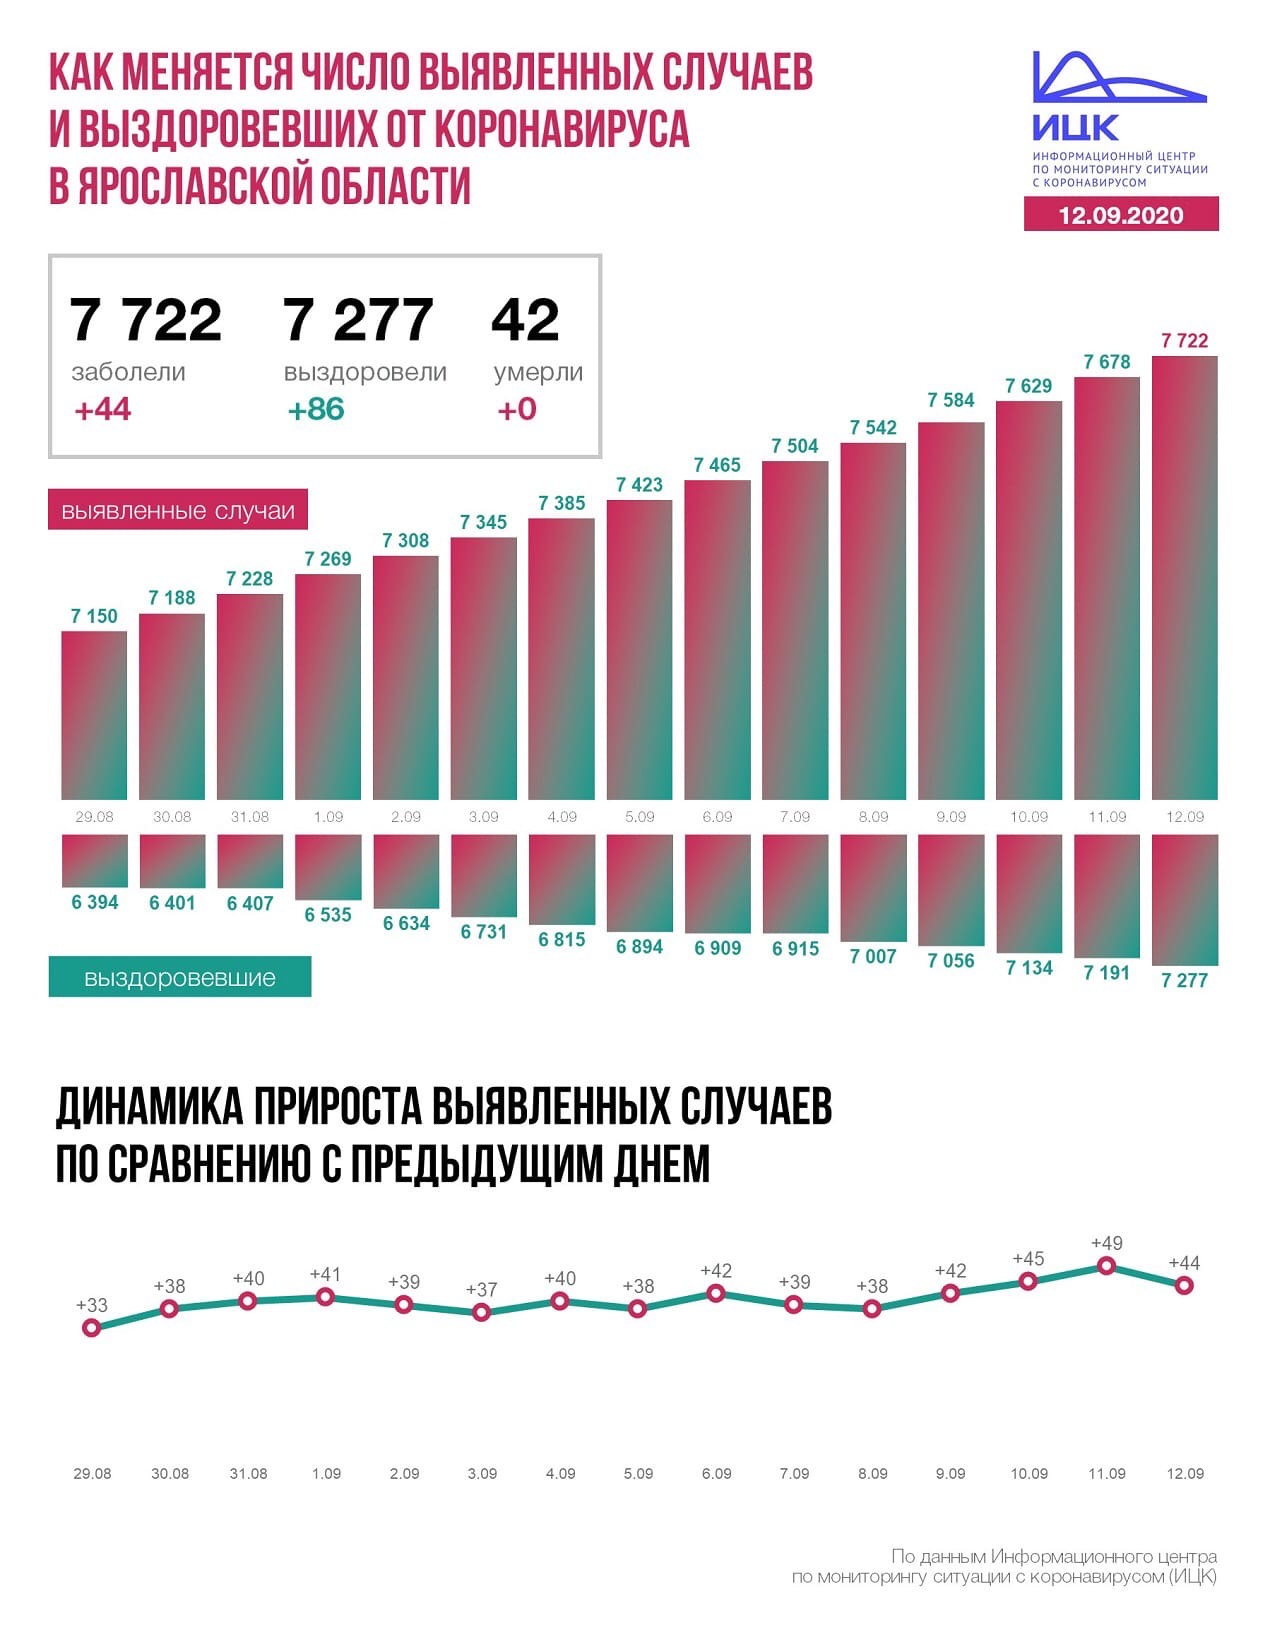 Как меняется число заболевших в Ярославской области